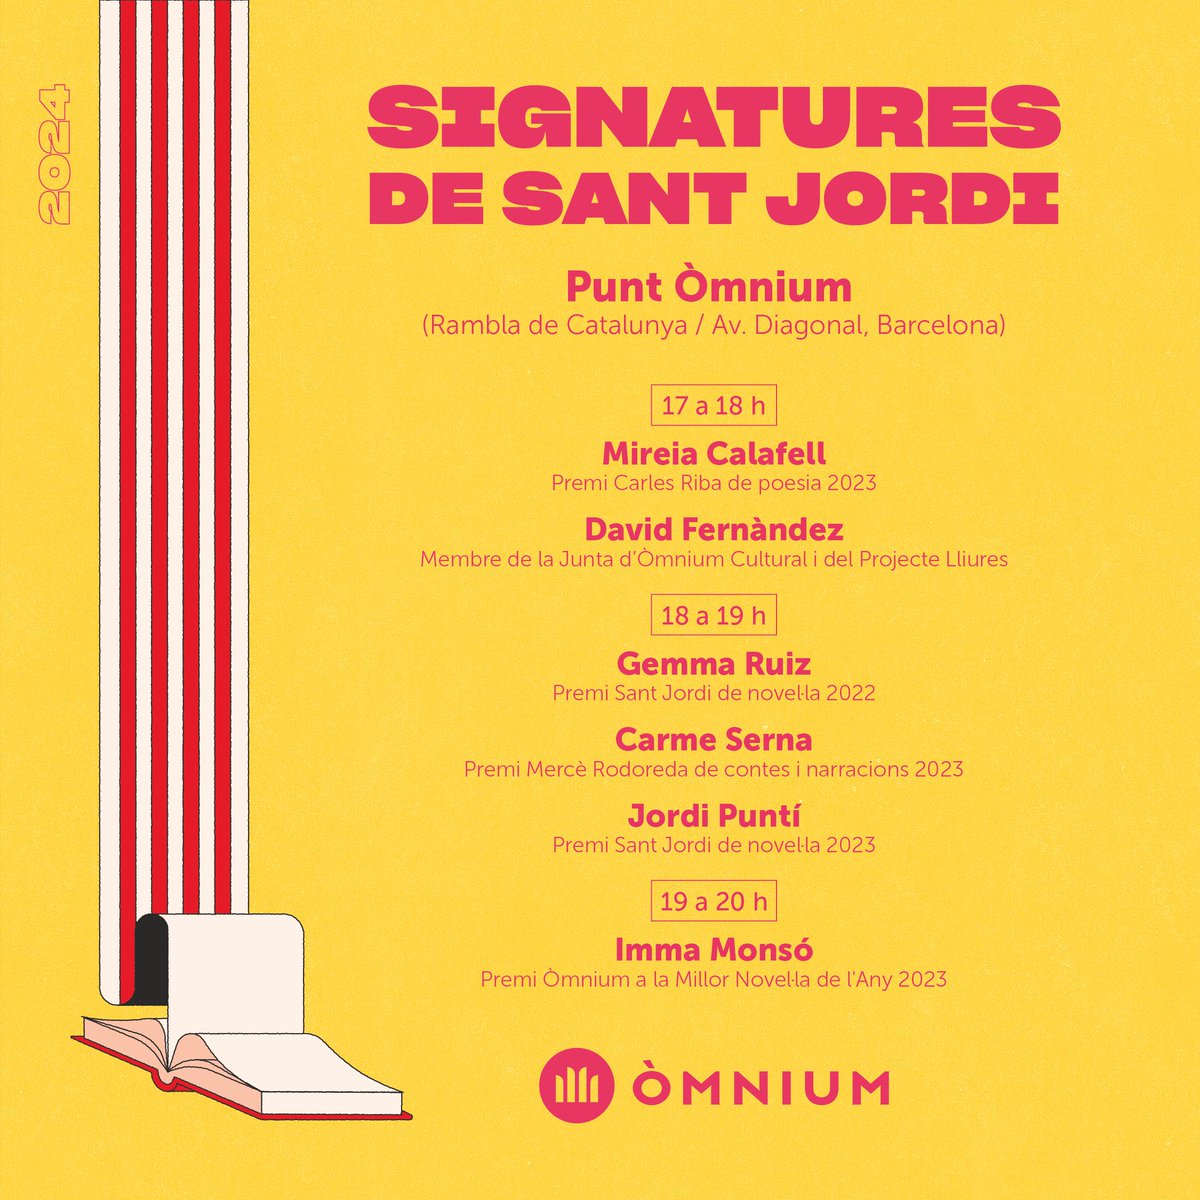 Celebra Sant Jordi amb @omnium i aconsegueix les signatures dels teus autors preferits 📙🌹 📍 A Barcelona ens trobaràs a la rambla de Catalunya amb l'av. Diagonal